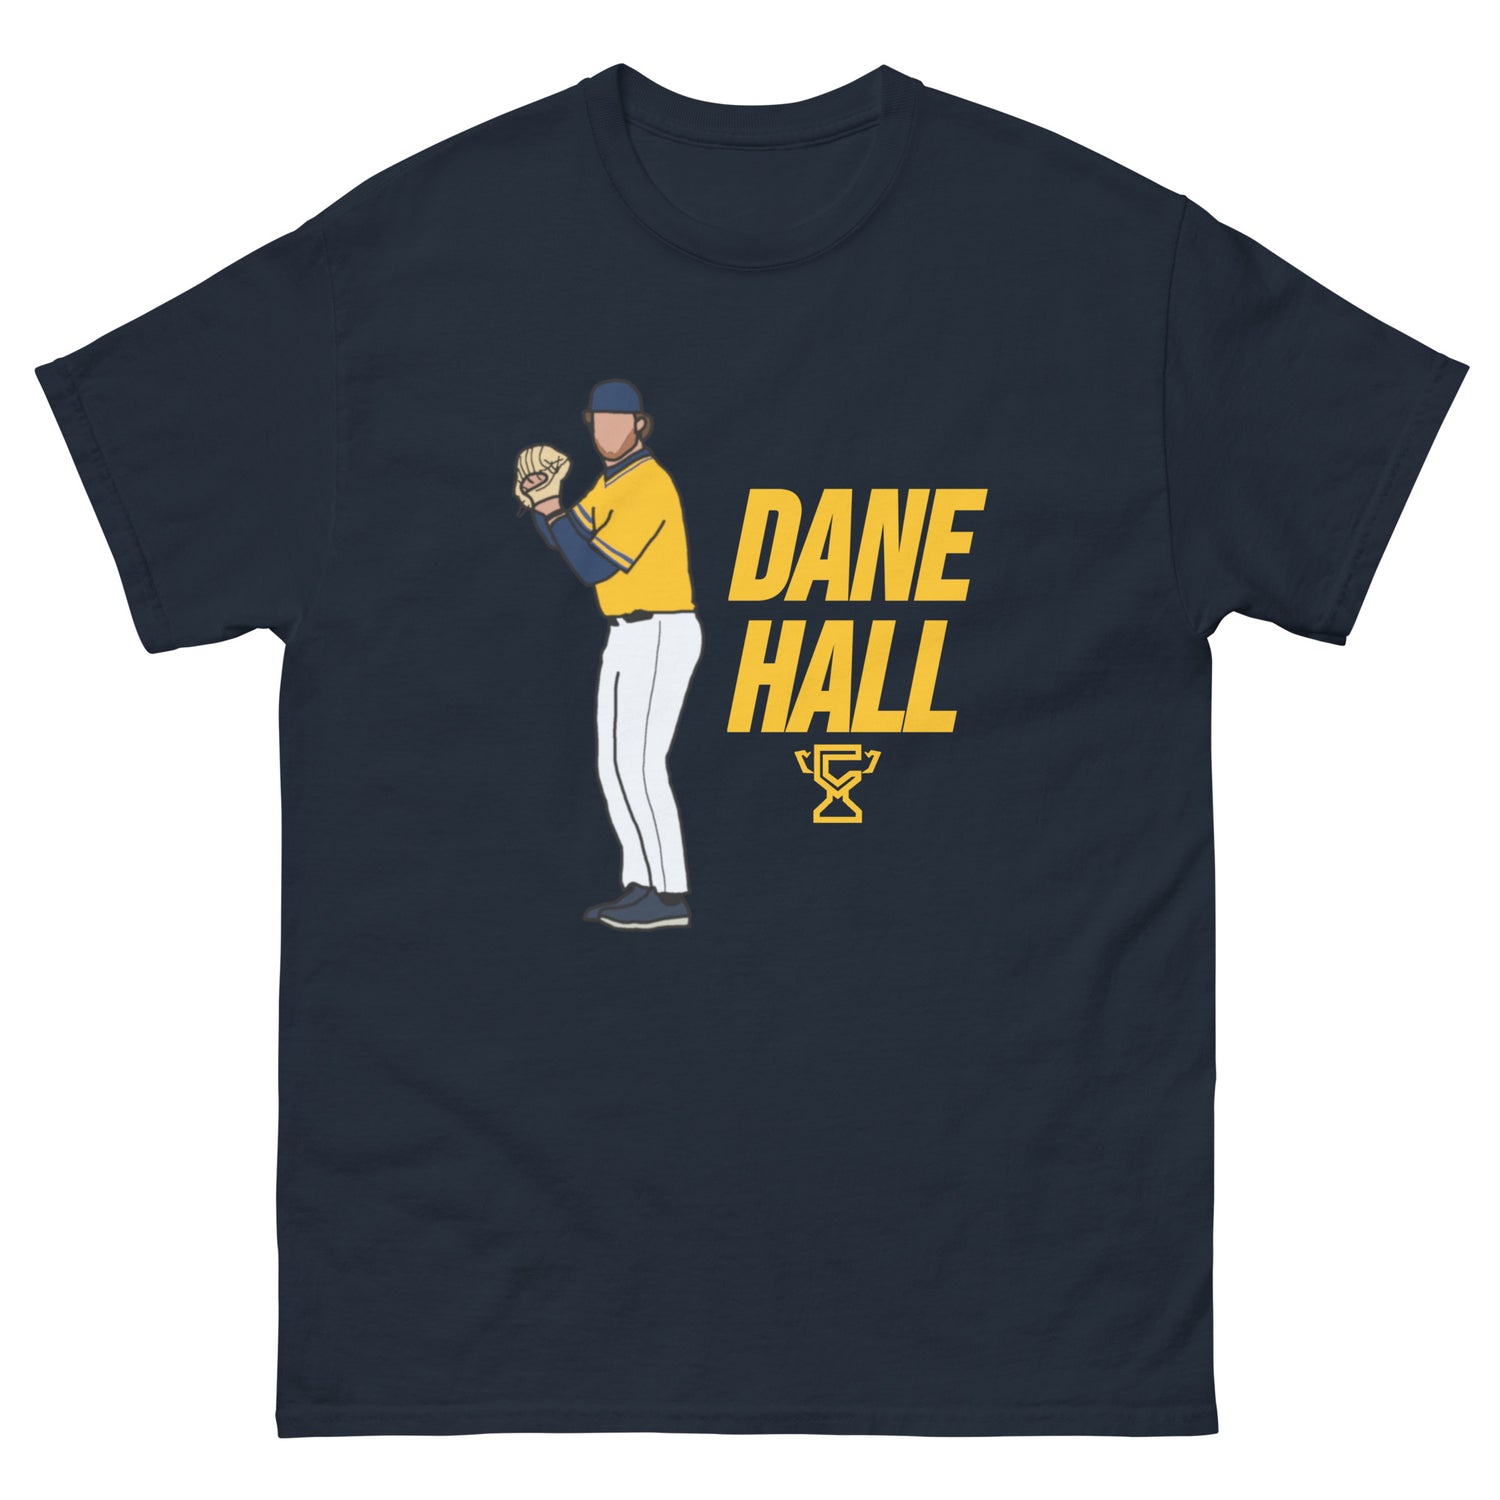 Navy t-shirt featuring art of Dane Hall.